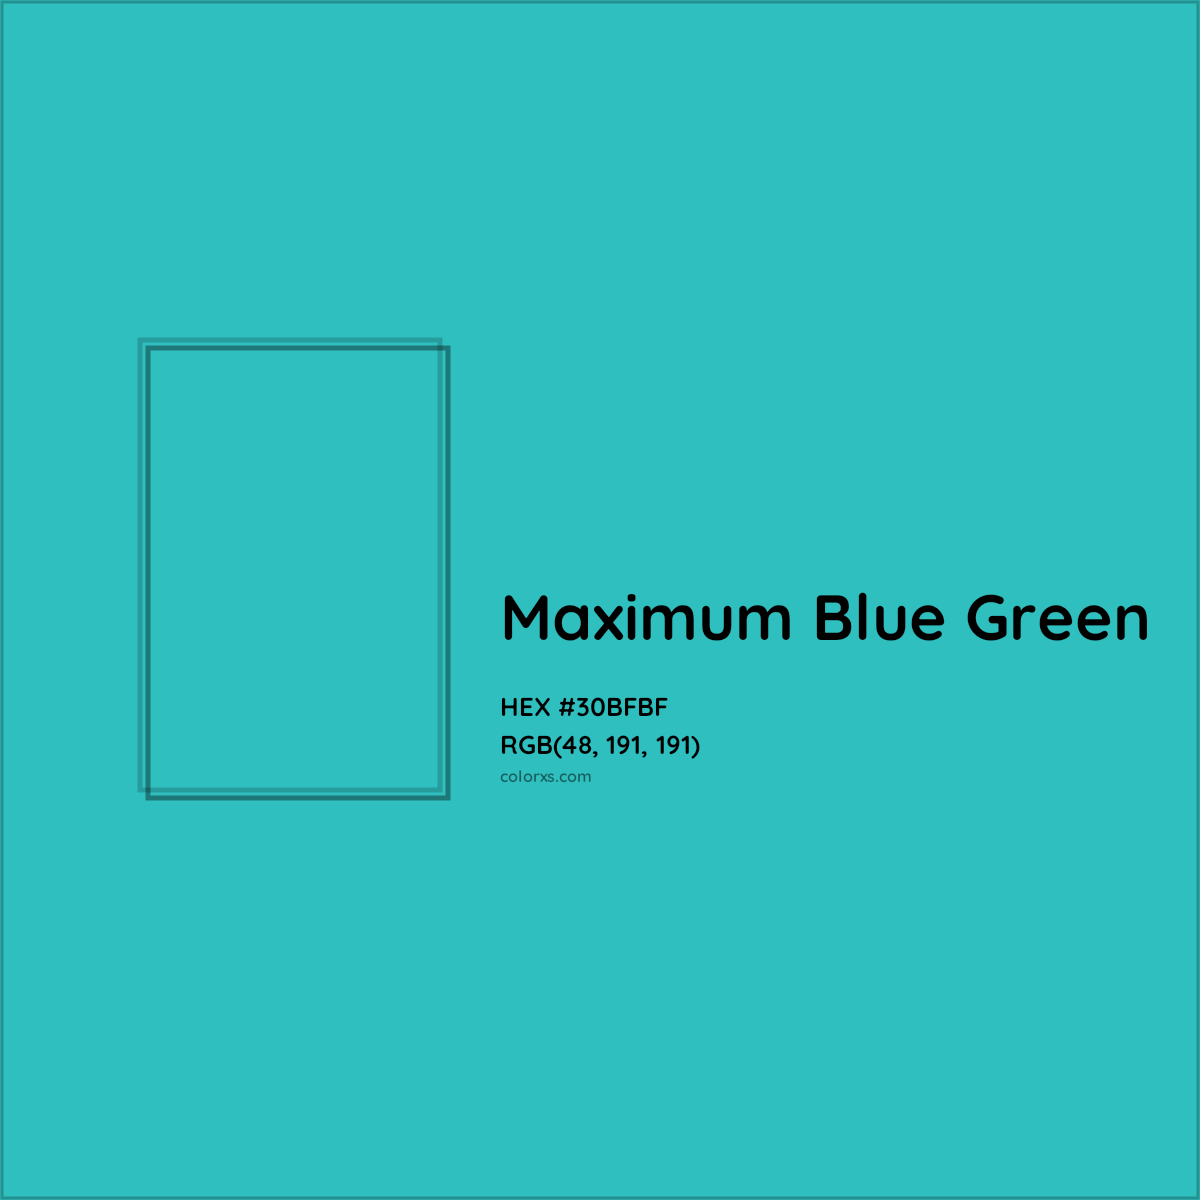 HEX #30BFBF Maximum Blue Green Color Crayola Crayons - Color Code